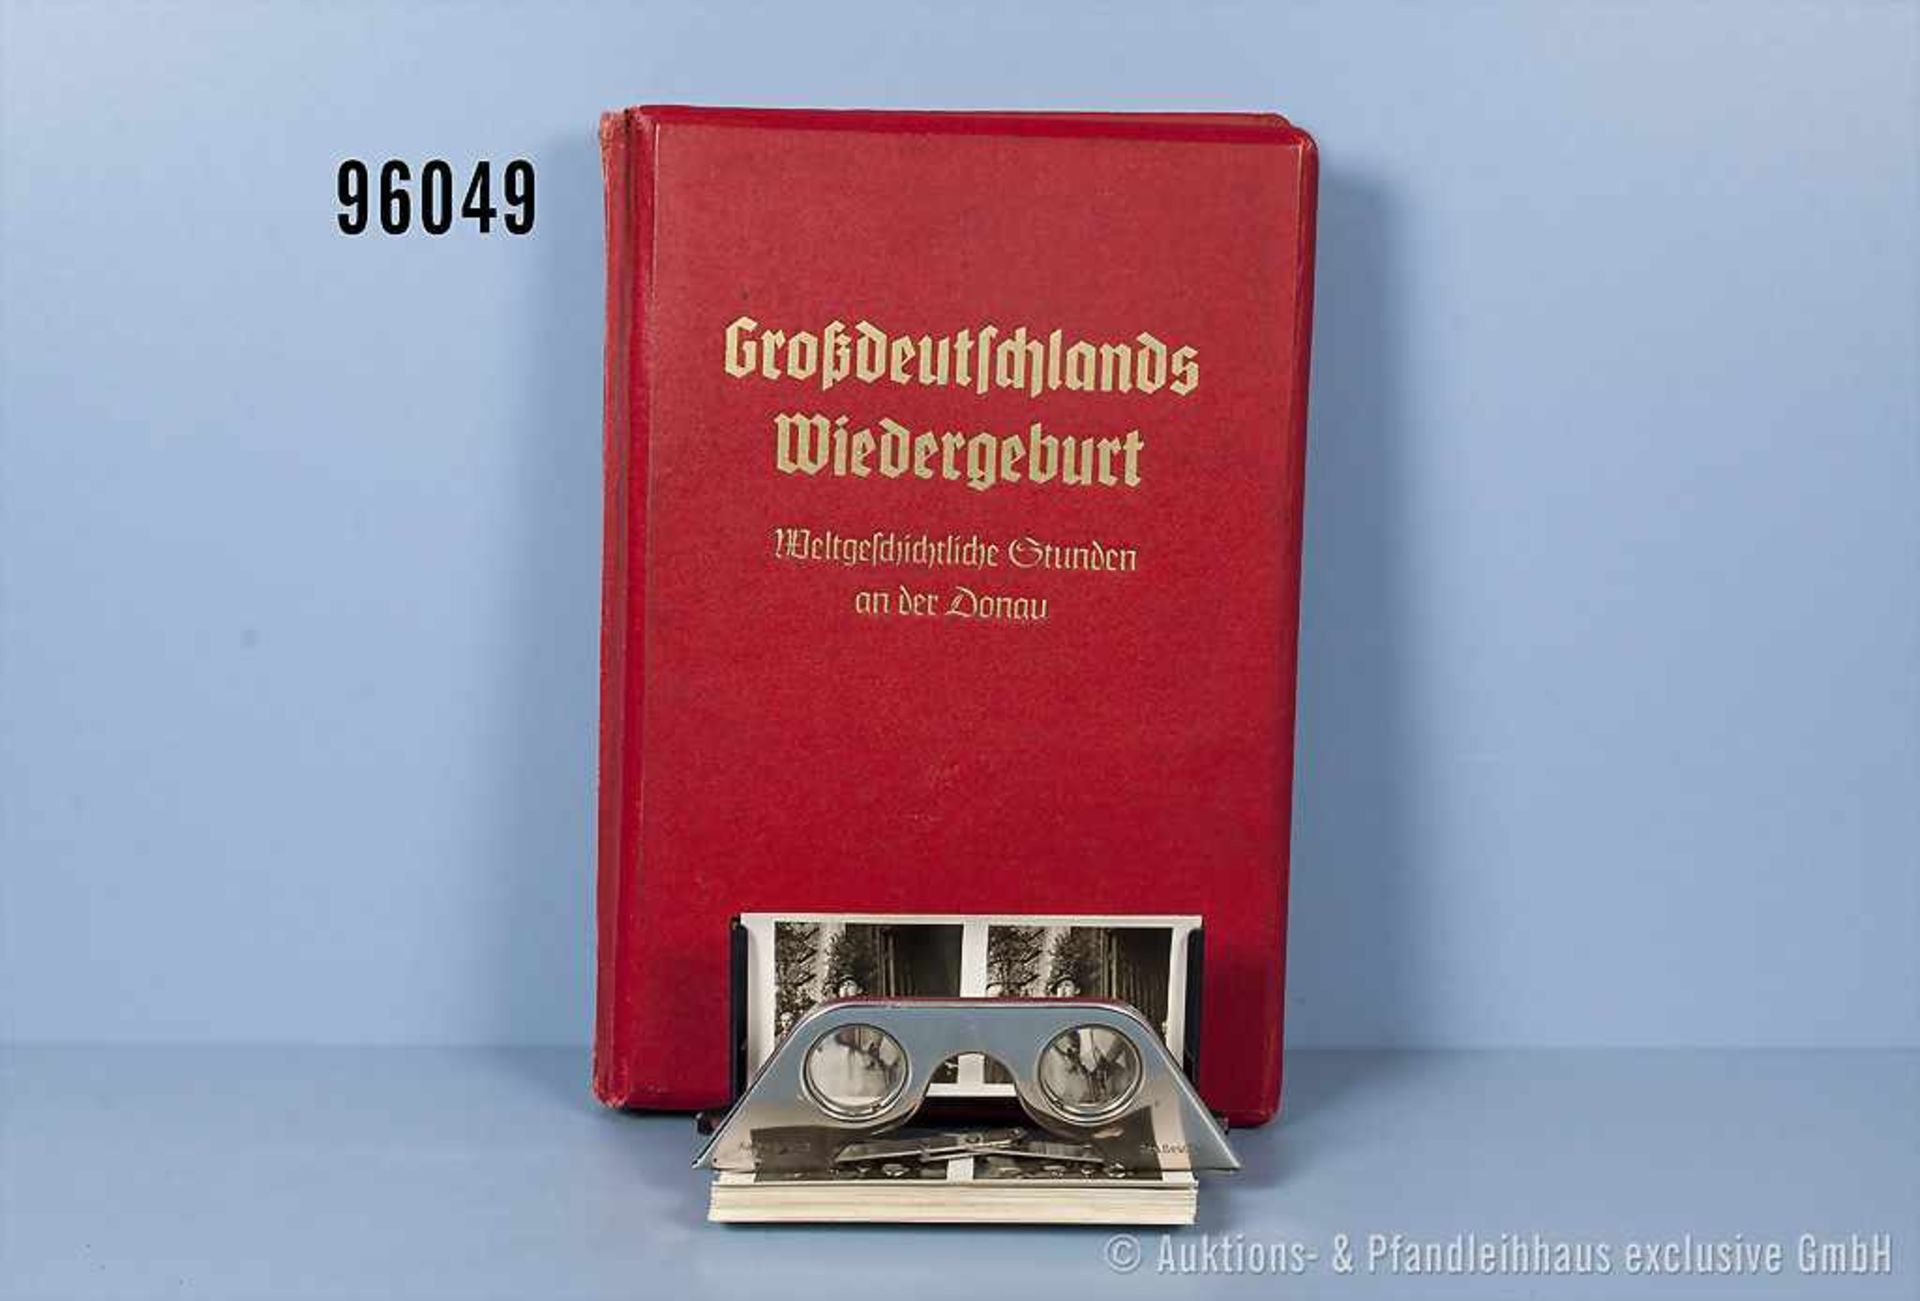 Raumbildalbum "Großdeutschlands Wiedergeburt - Weltgeschichtliche Stunden an der Donau", komplett